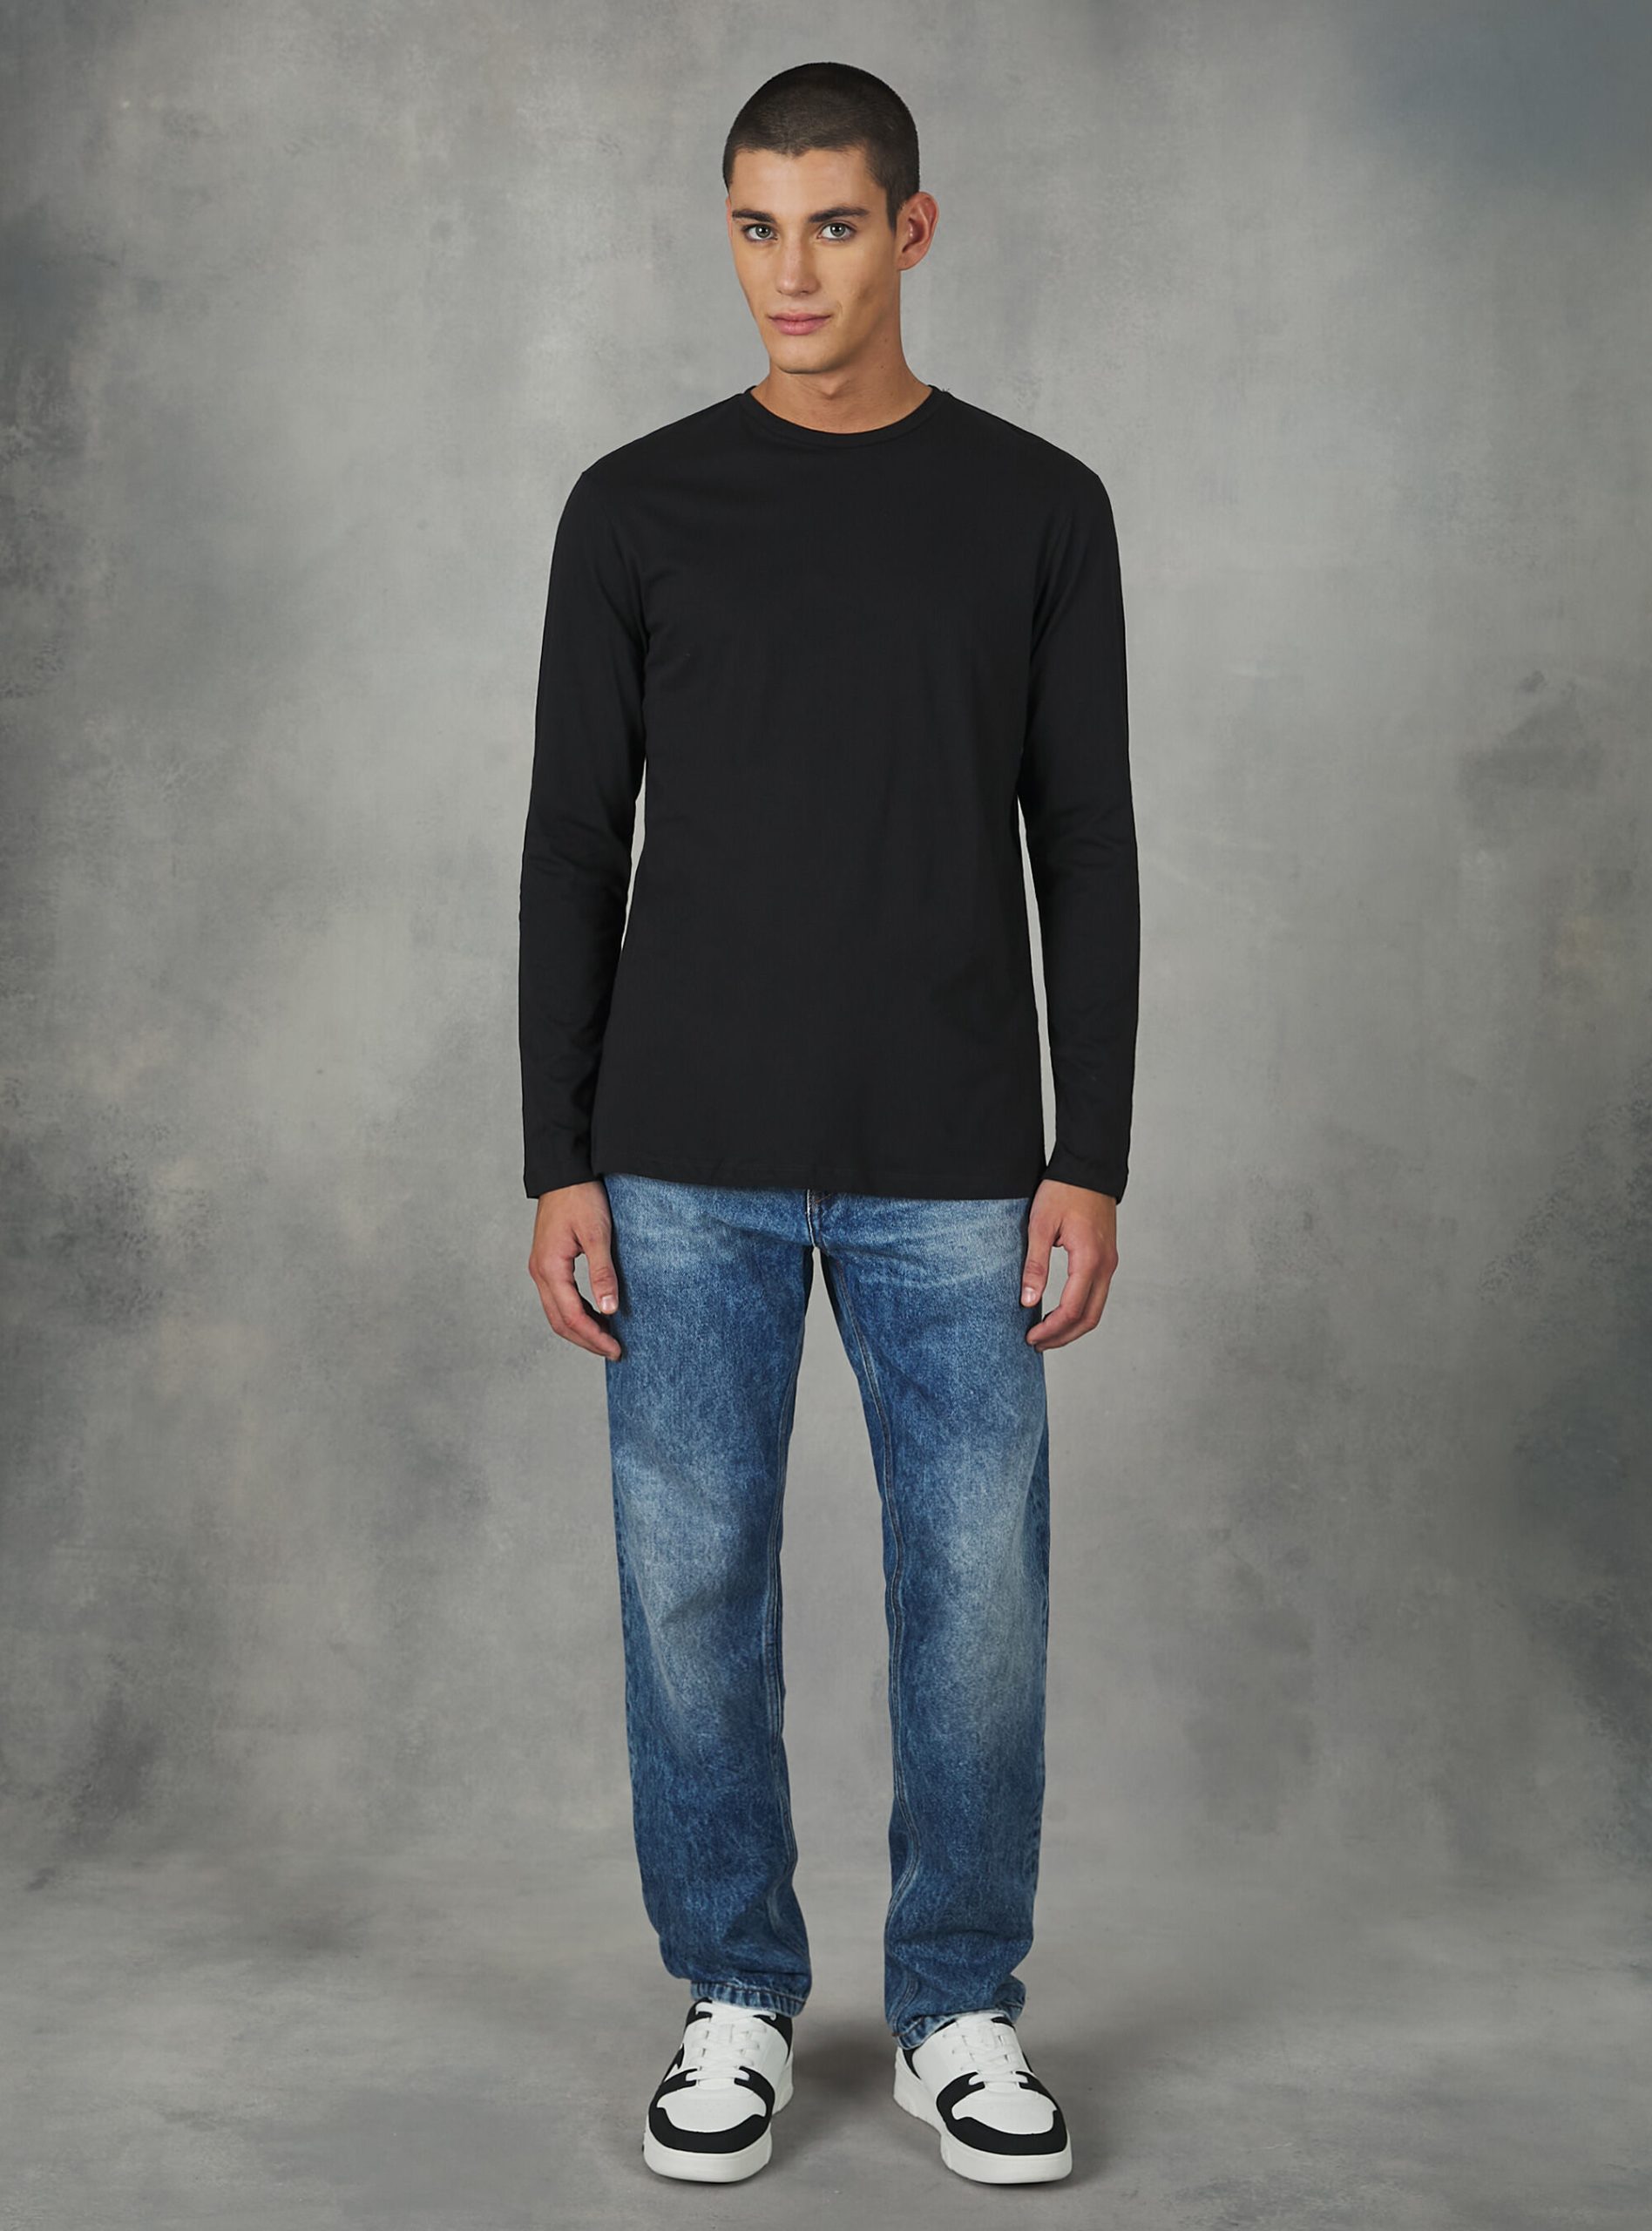 Long-Sleeved Cotton T-Shirt Bk1 Black Produktsicherheit Alcott T-Shirts Männer – 1